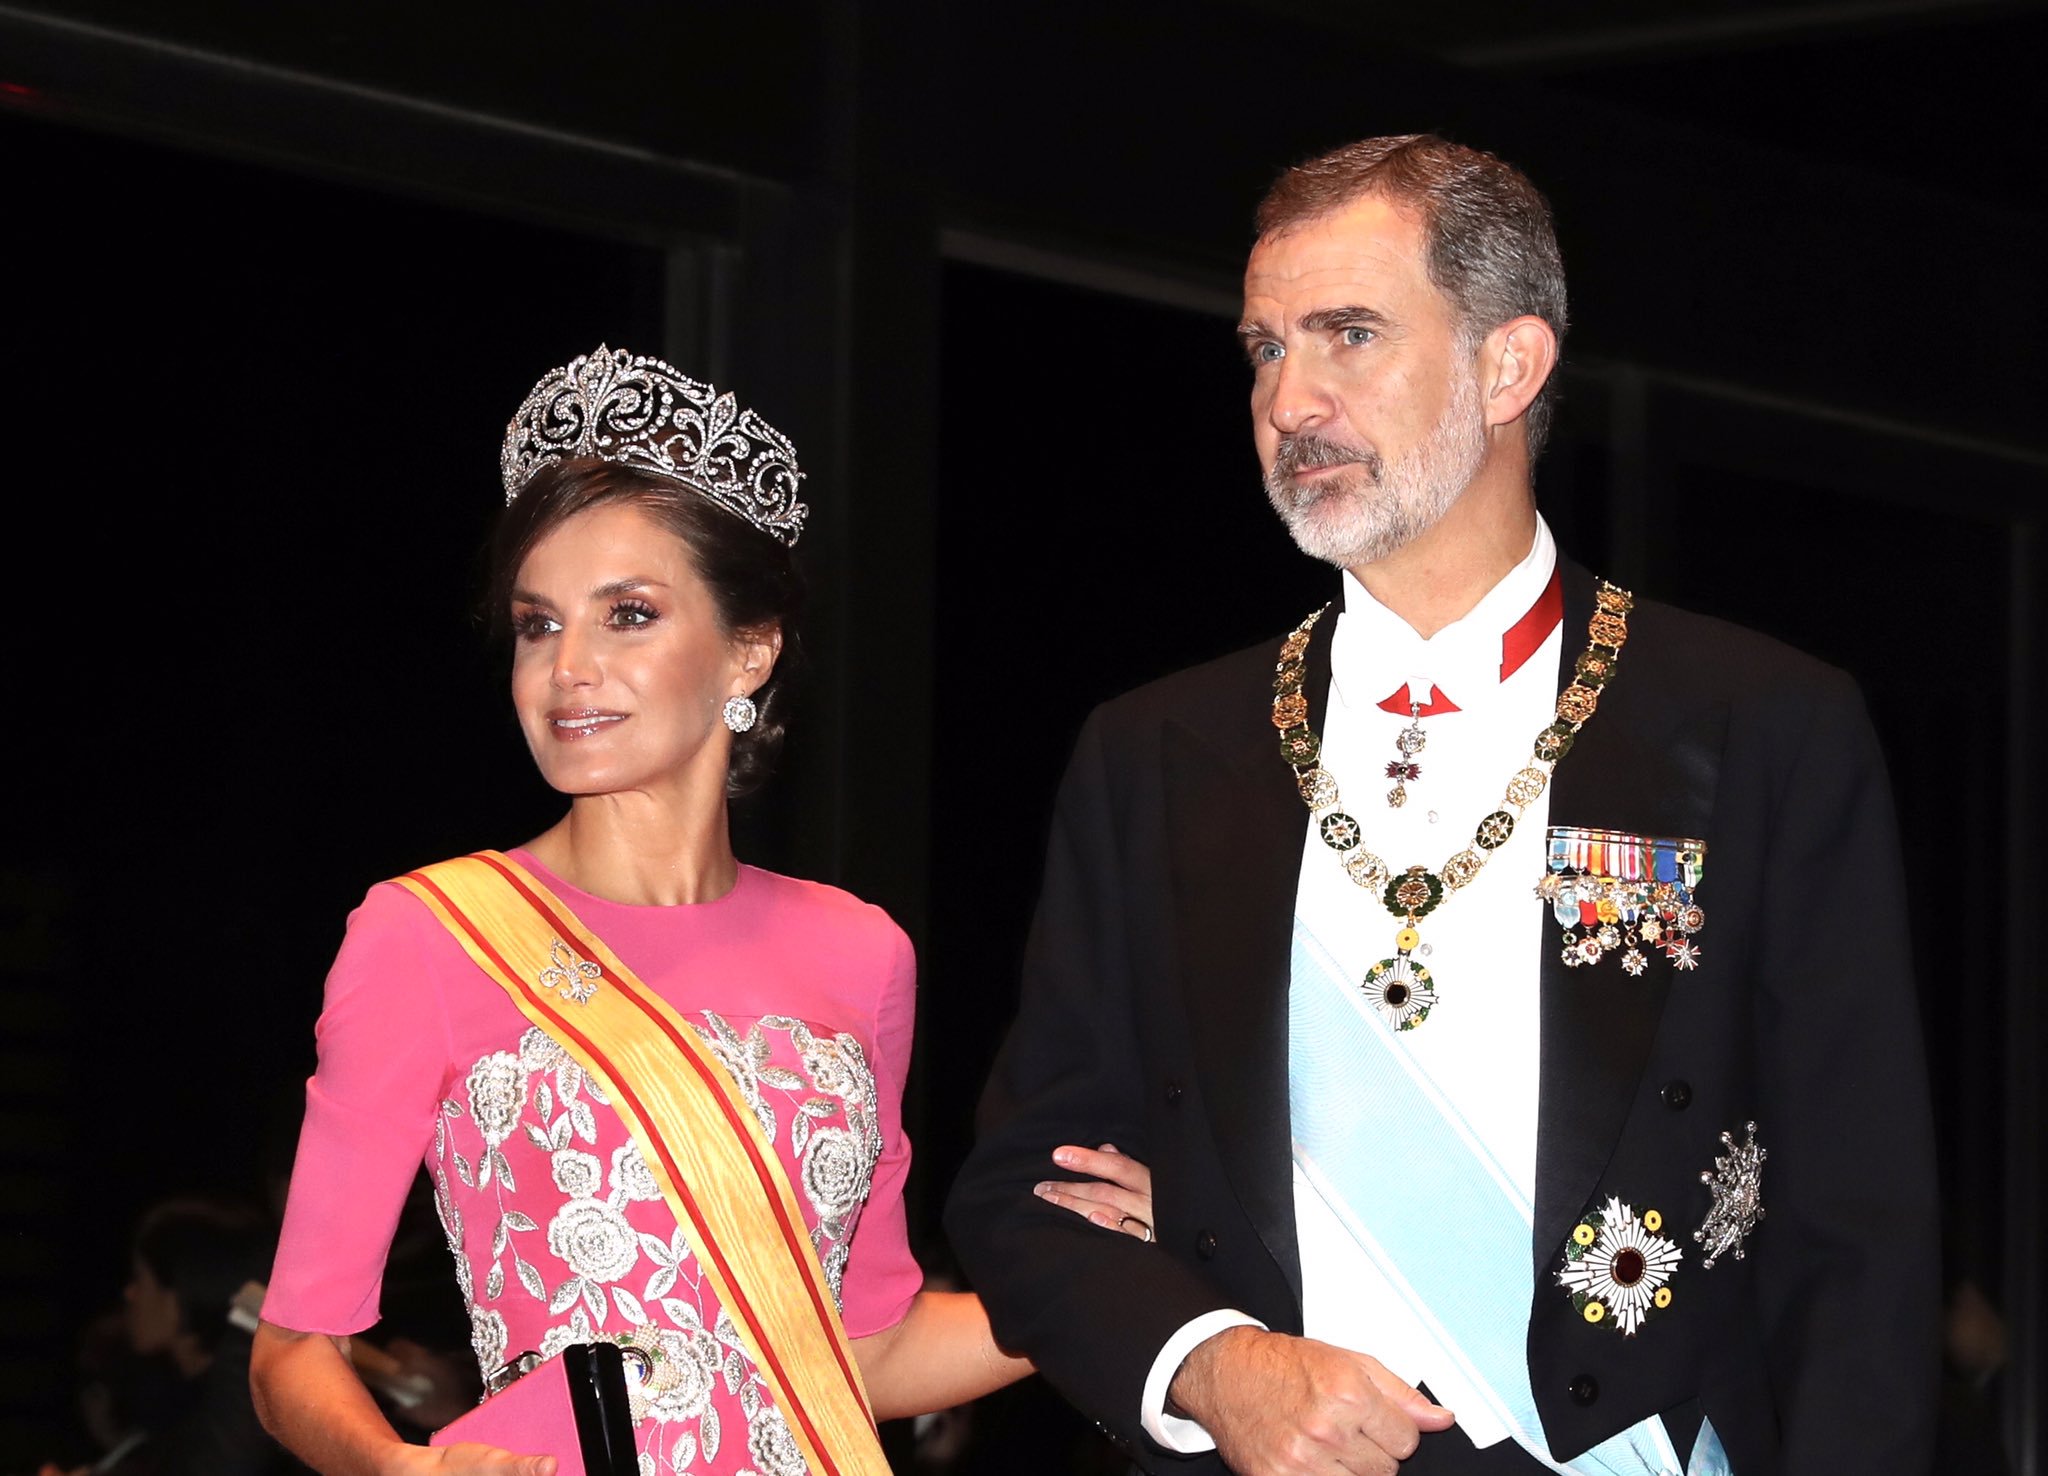 La reina Letizia espectacular con un exclusivo Carolina Herrera hecho a medida en la cena de gala de Japón